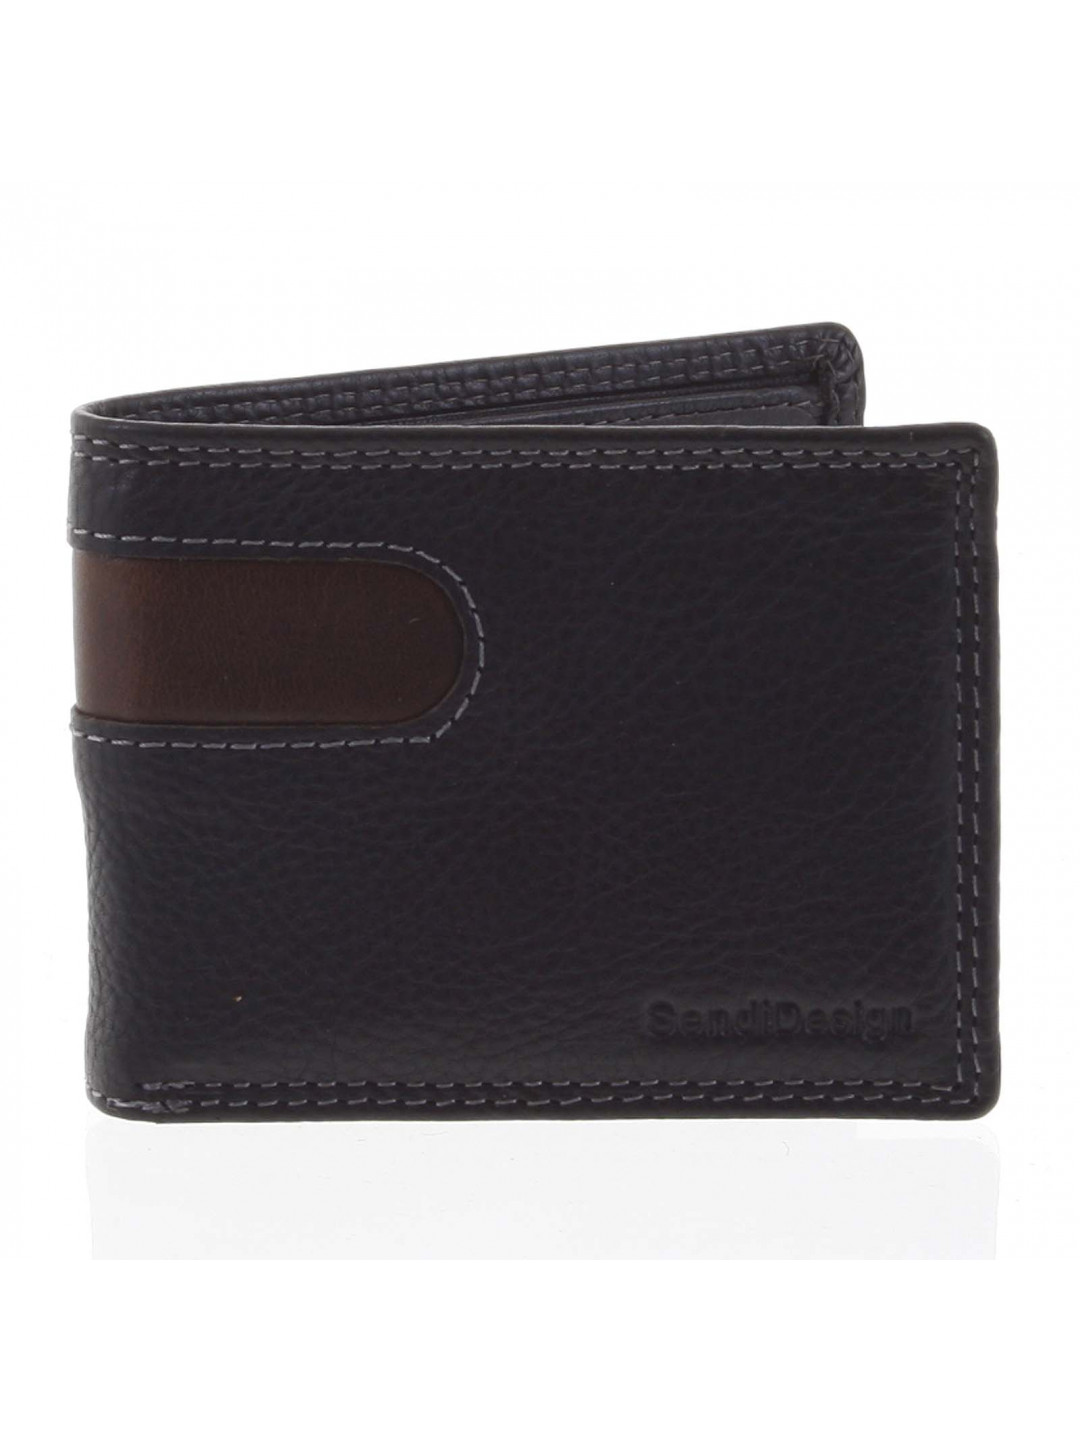 Pánská kožená peněženka na karty černá – SendiDesign Sinai